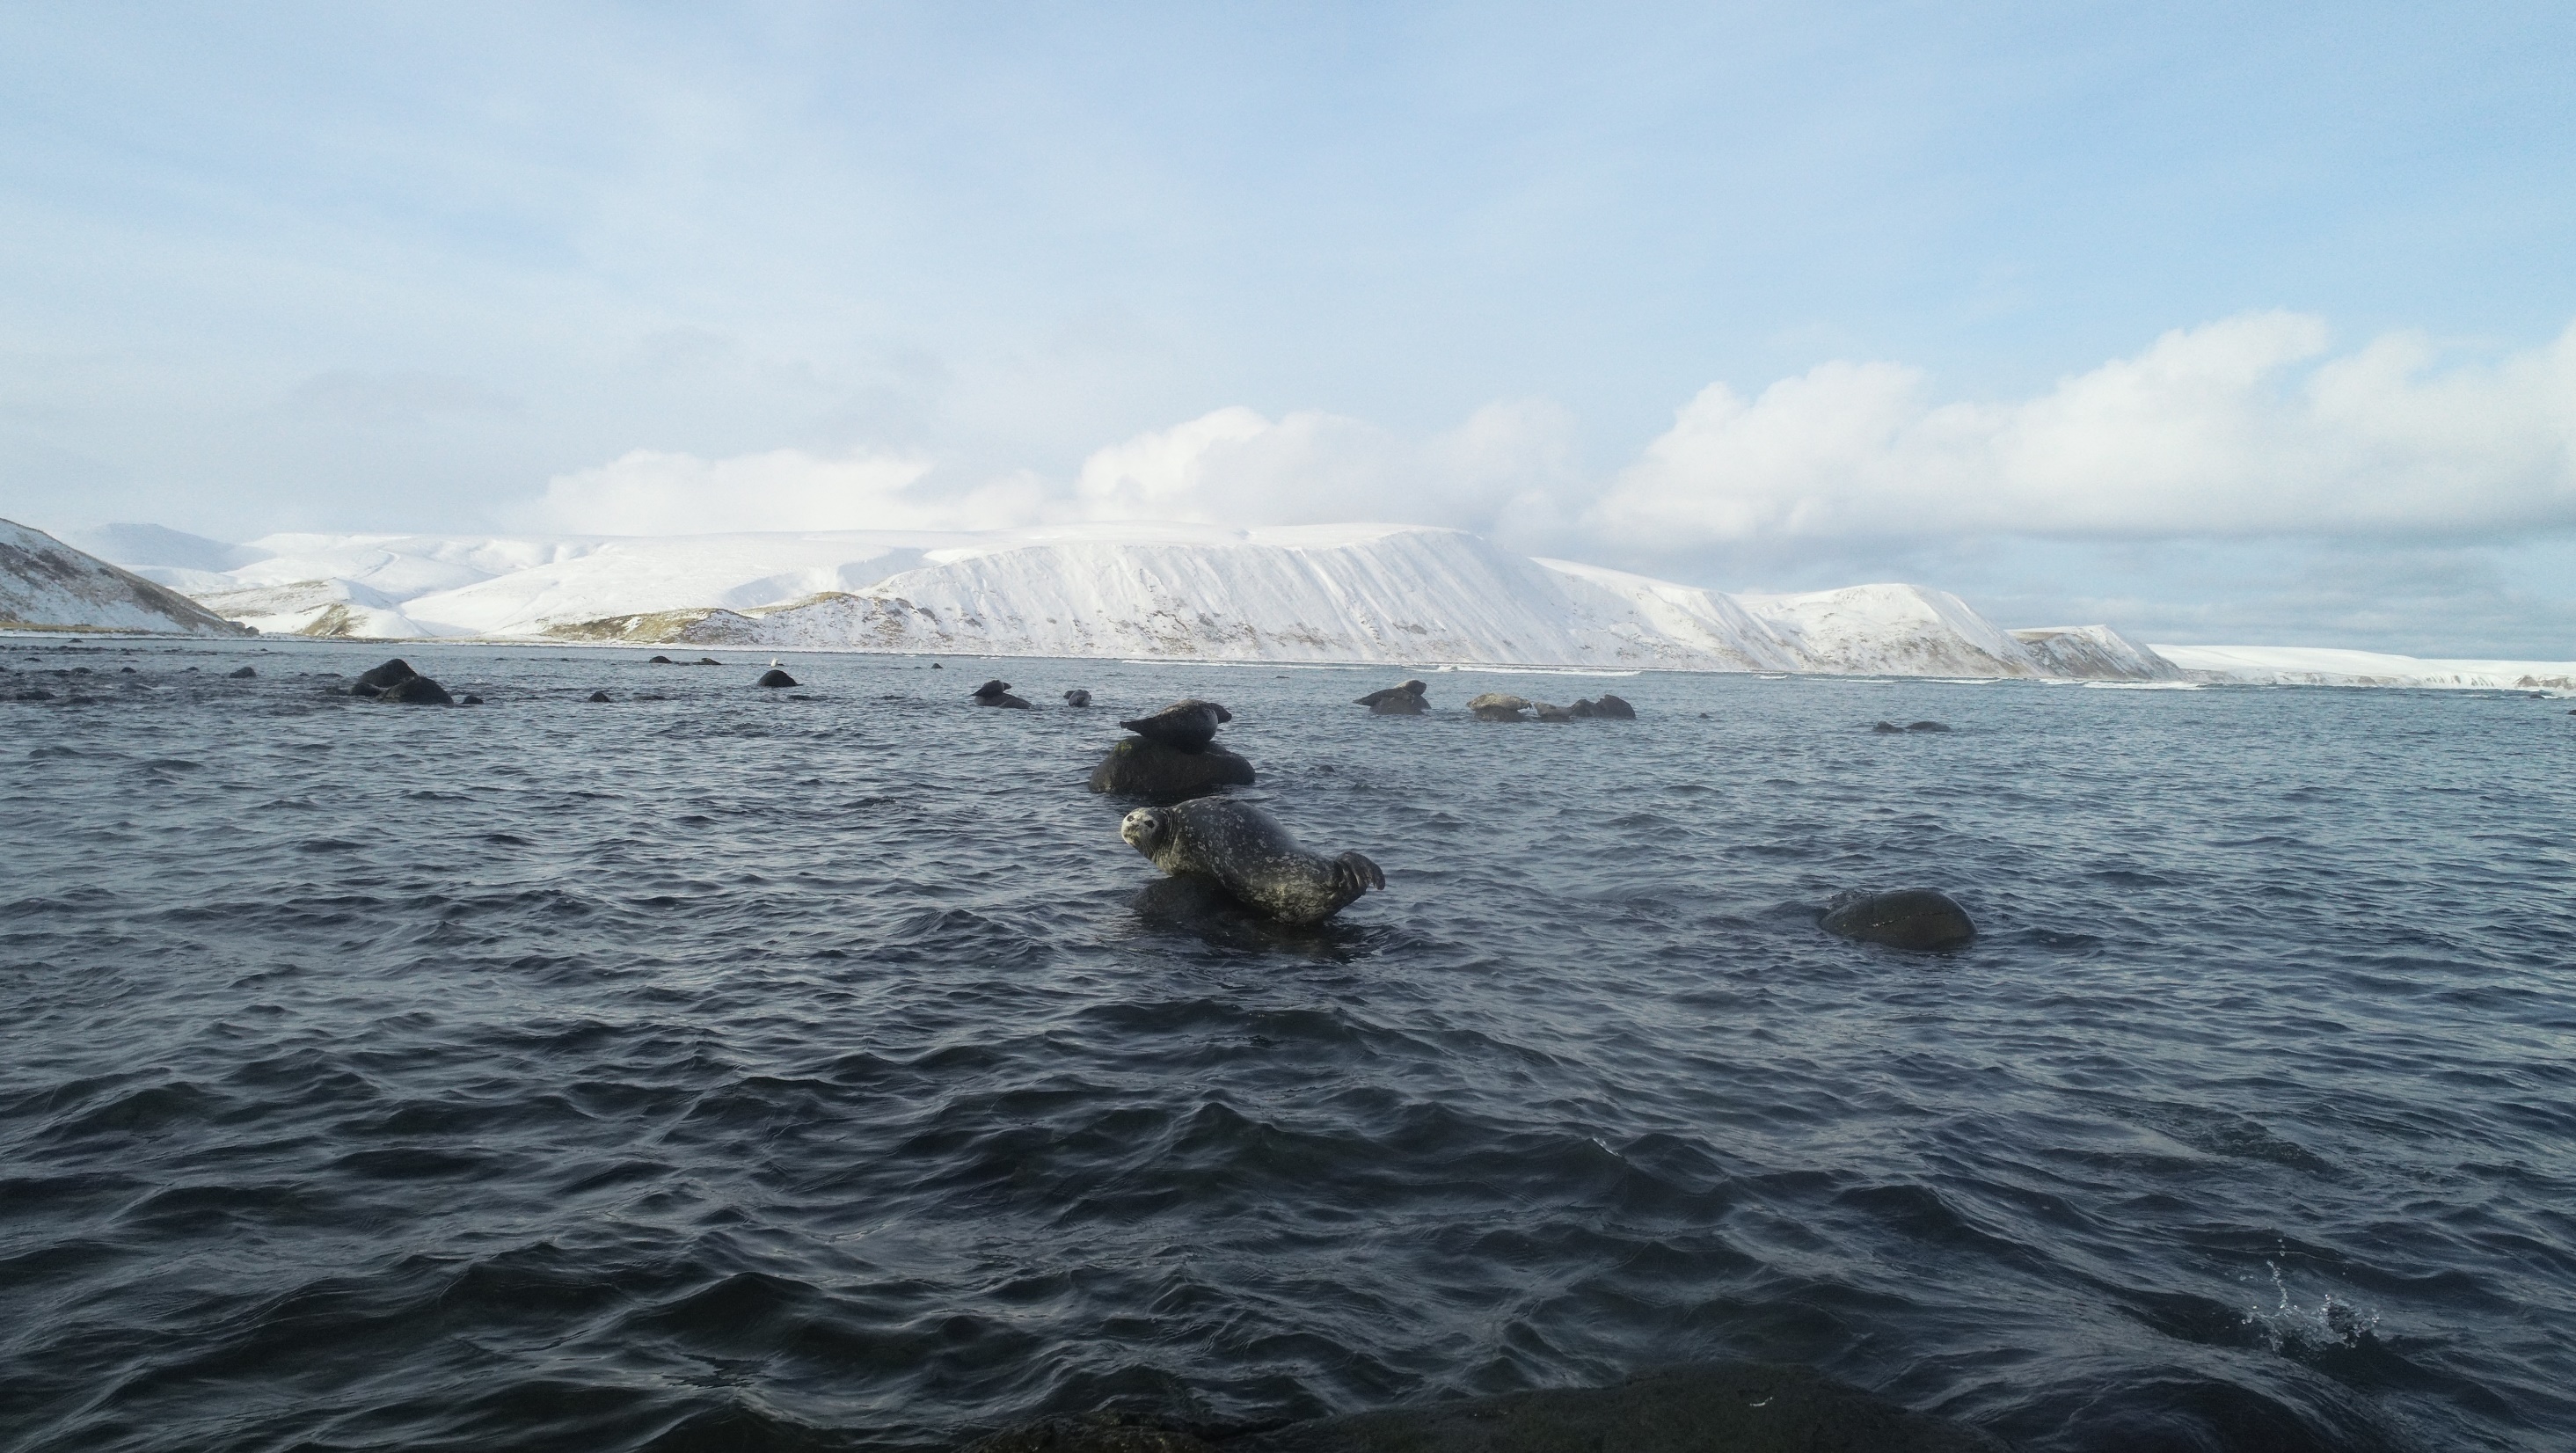 Антур - дальневосточный подвид обыкновенного тюленя, занесённый в Красную книгу России